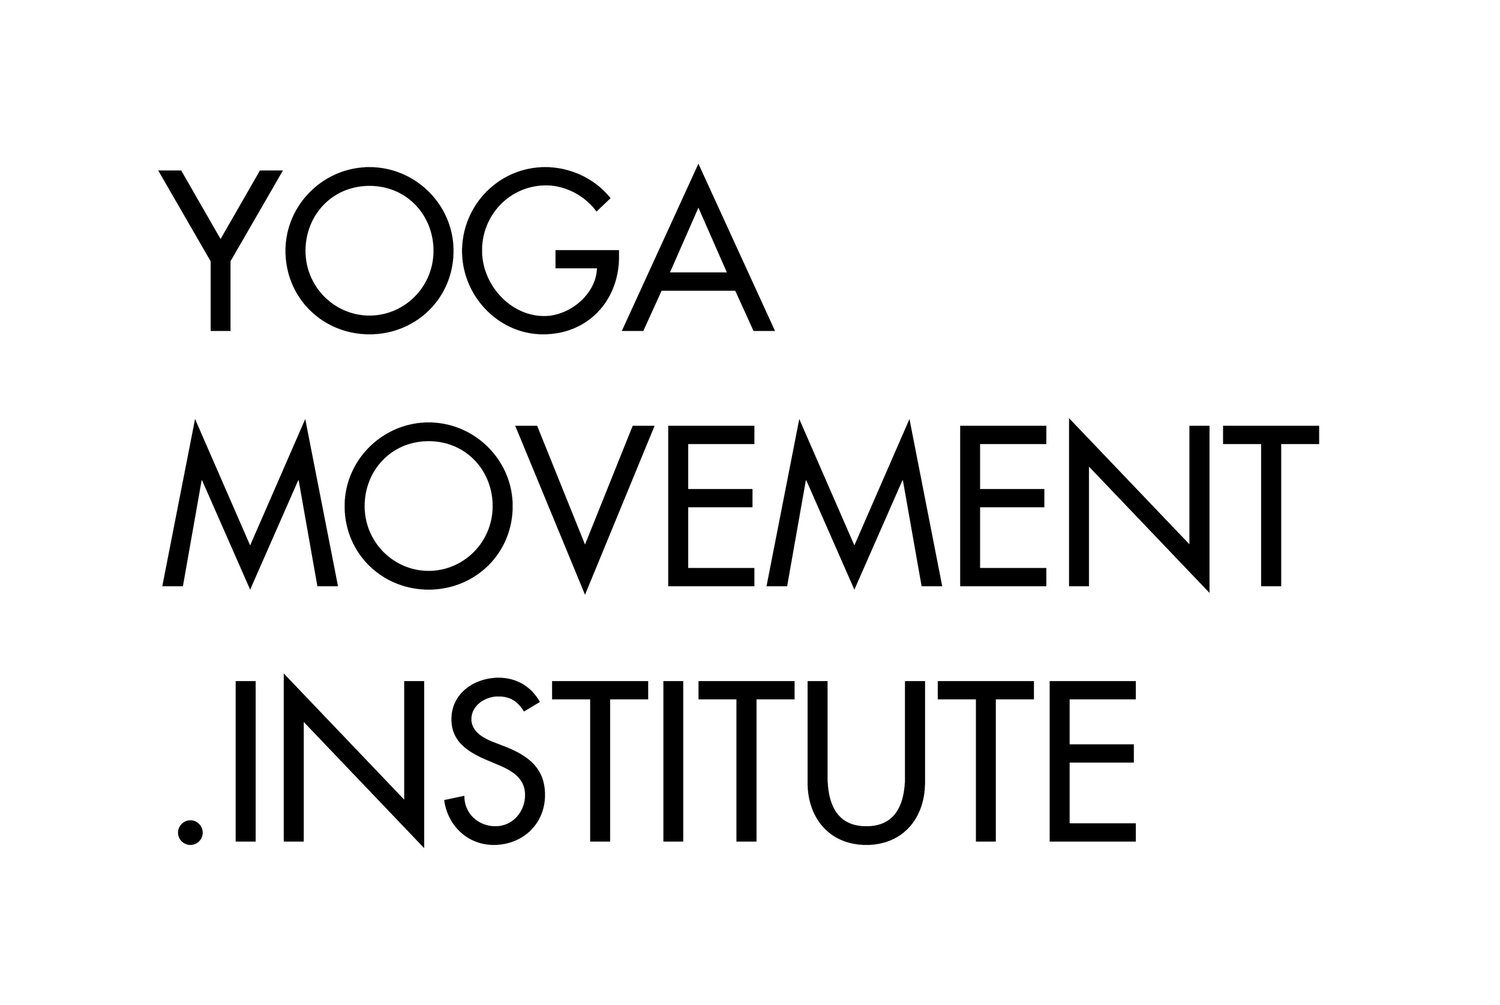 Studio de Yoga, Ashtanga Yoga, Mysore et Movement Practice en centre ville de Nantes